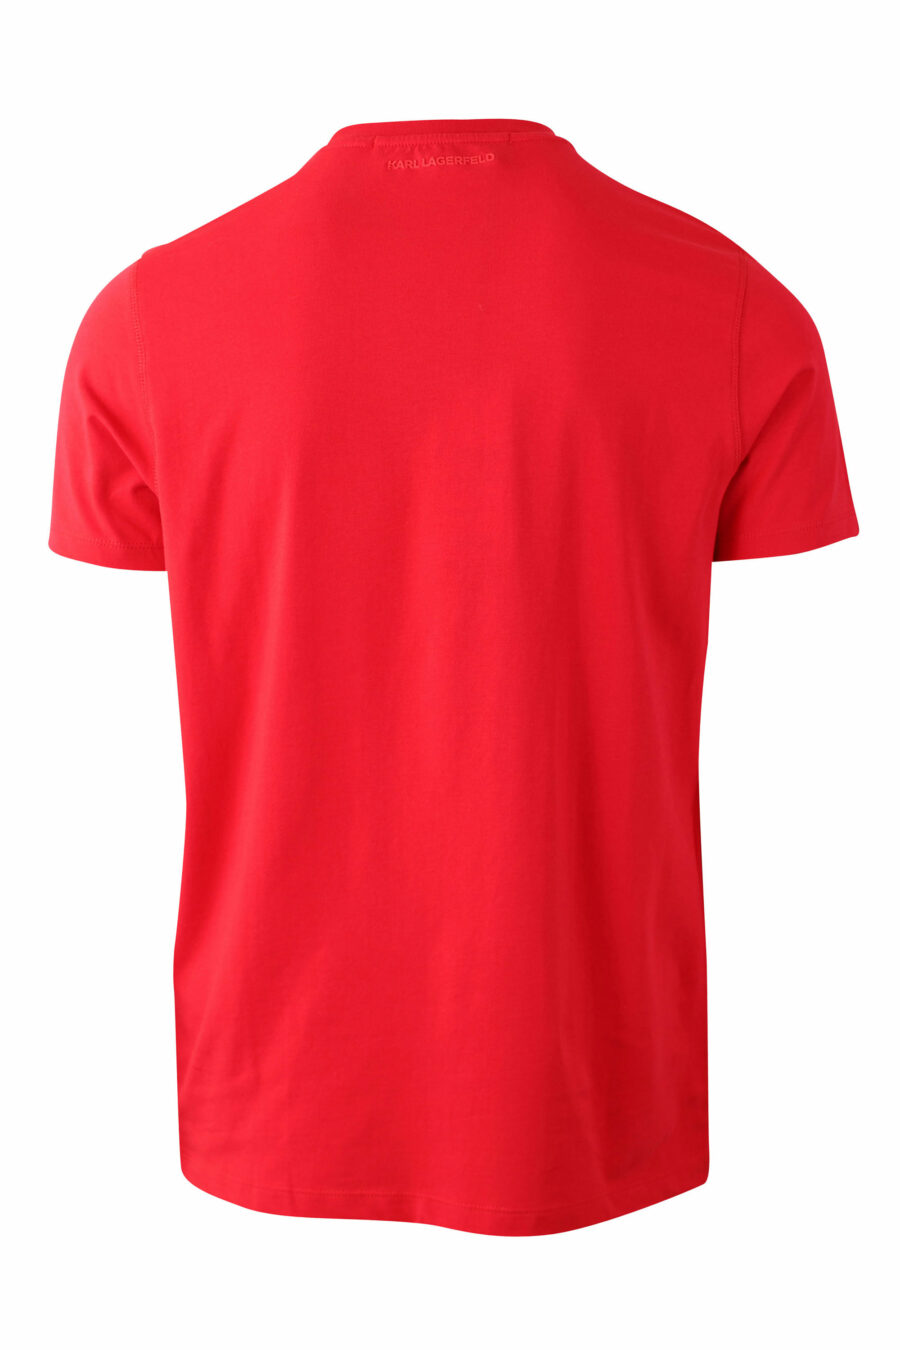 T-shirt vermelha com silhueta maxilogo "karl" - IMG 0049 1